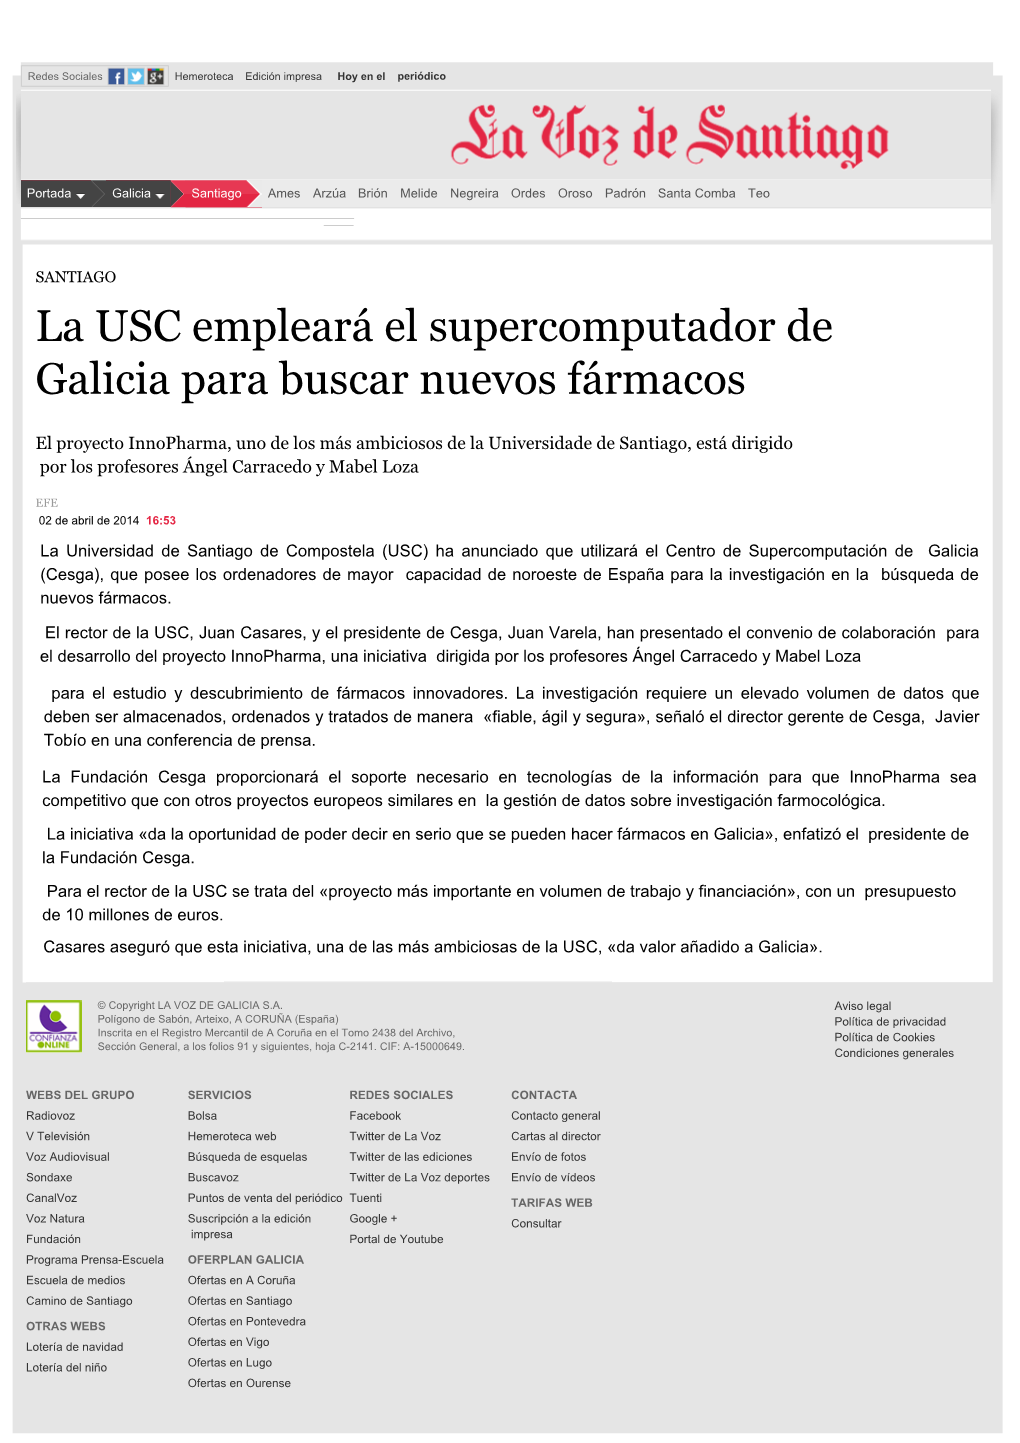 La USC Empleará El Supercomputador De Galicia Para Buscar Nuevos Fármacos